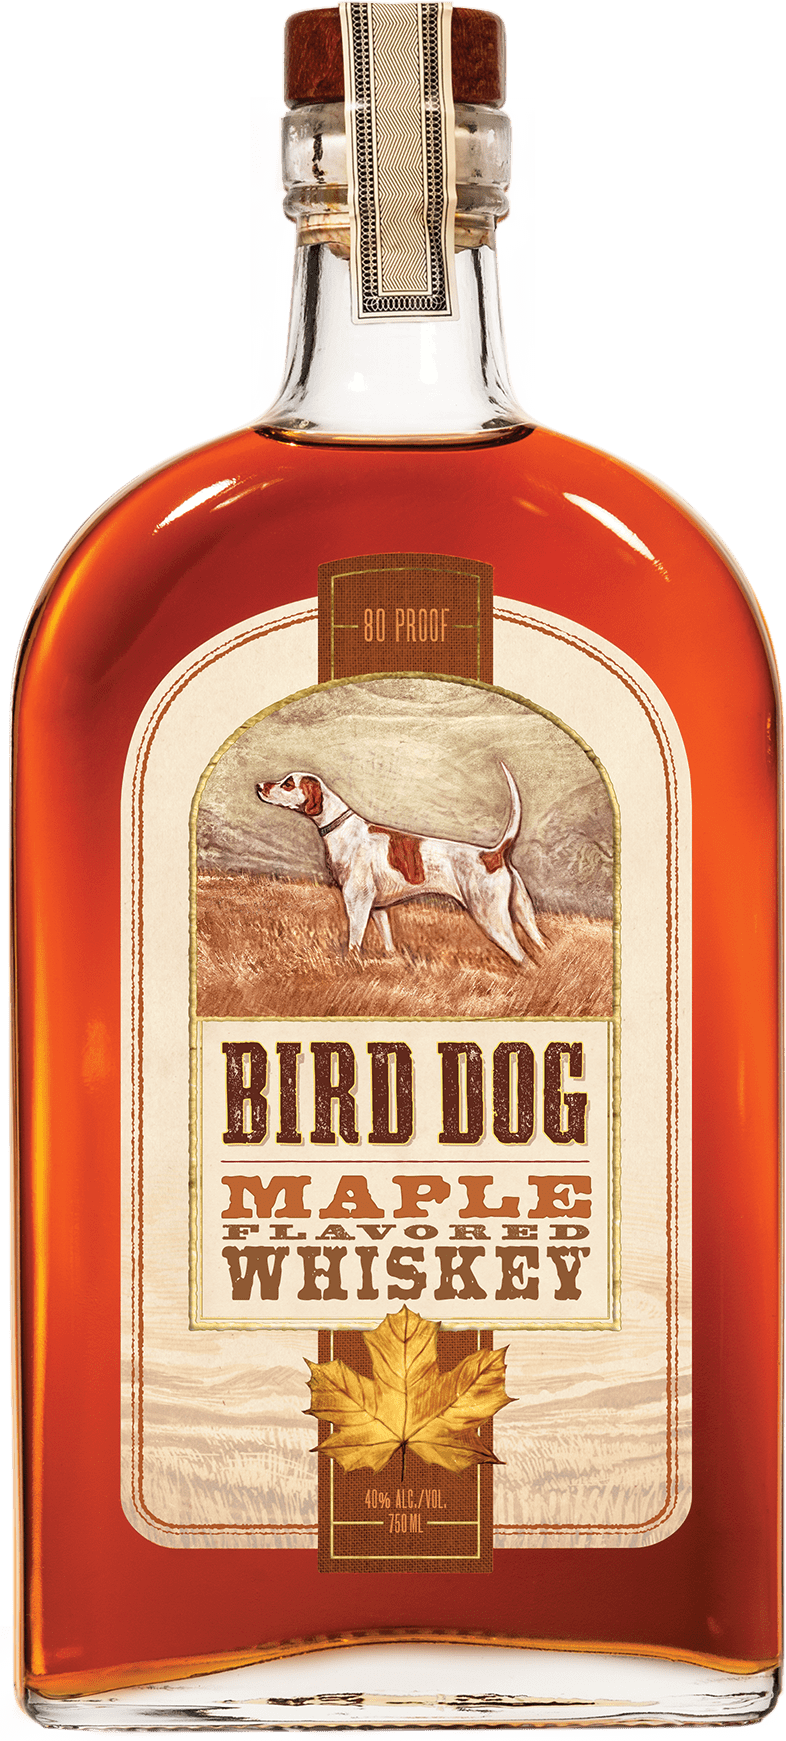 Bottle of Bird Dog Maple Whiskey